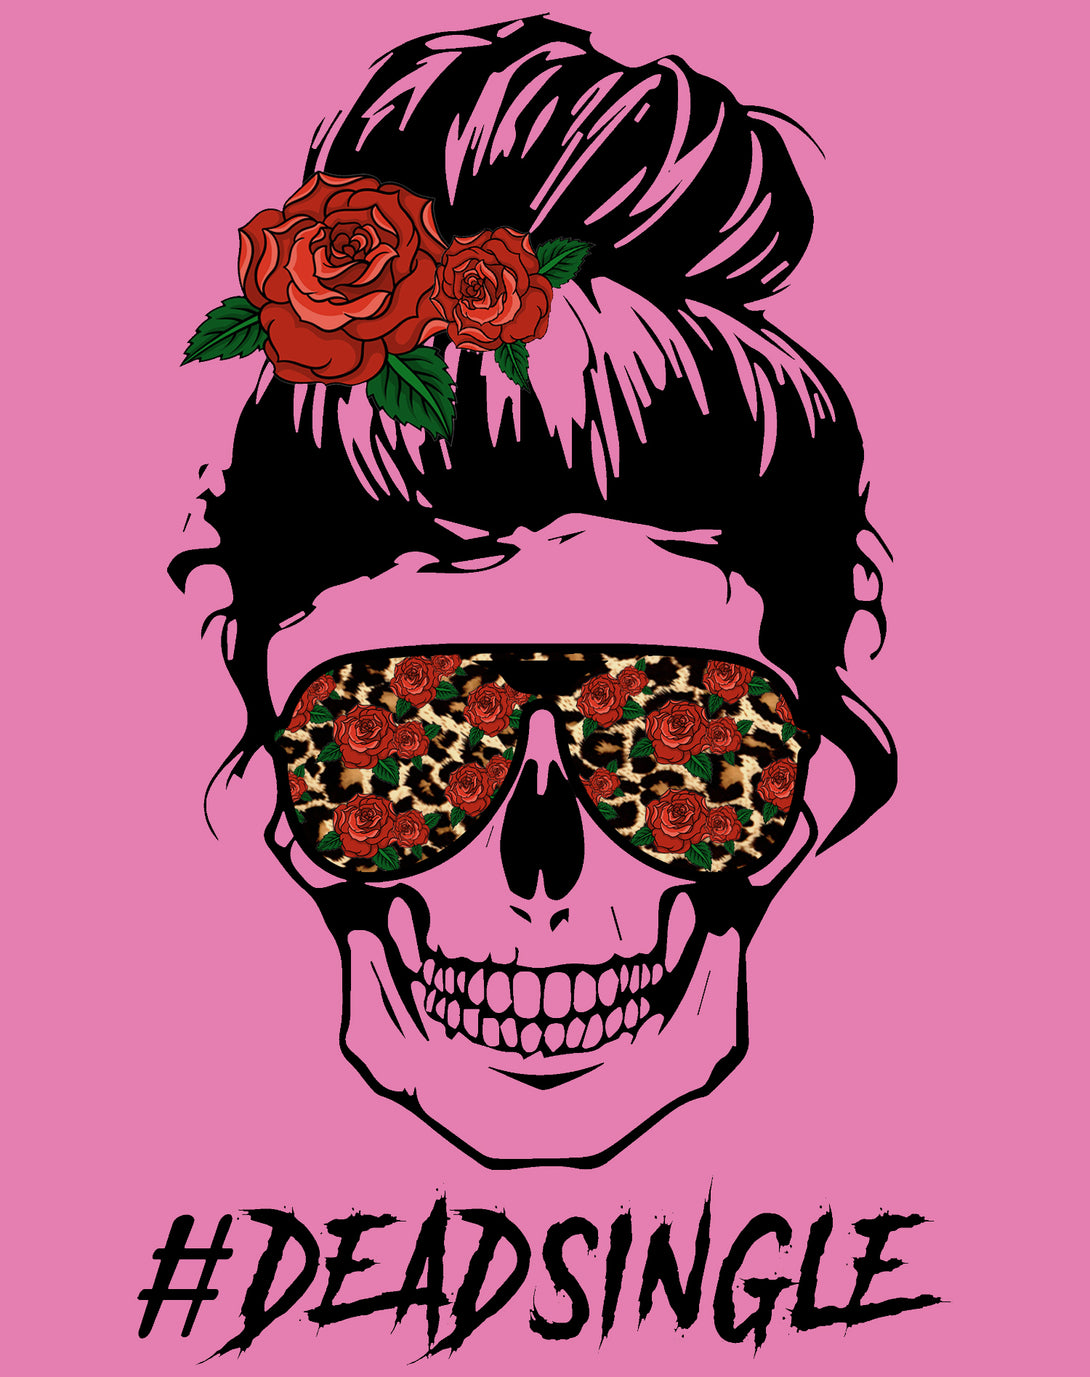 Valentine Graphic Rockabilly Rose & Wild Rock 'n' Roll Hearts Women's T-shirt Pink - Urban Species Design Close Up